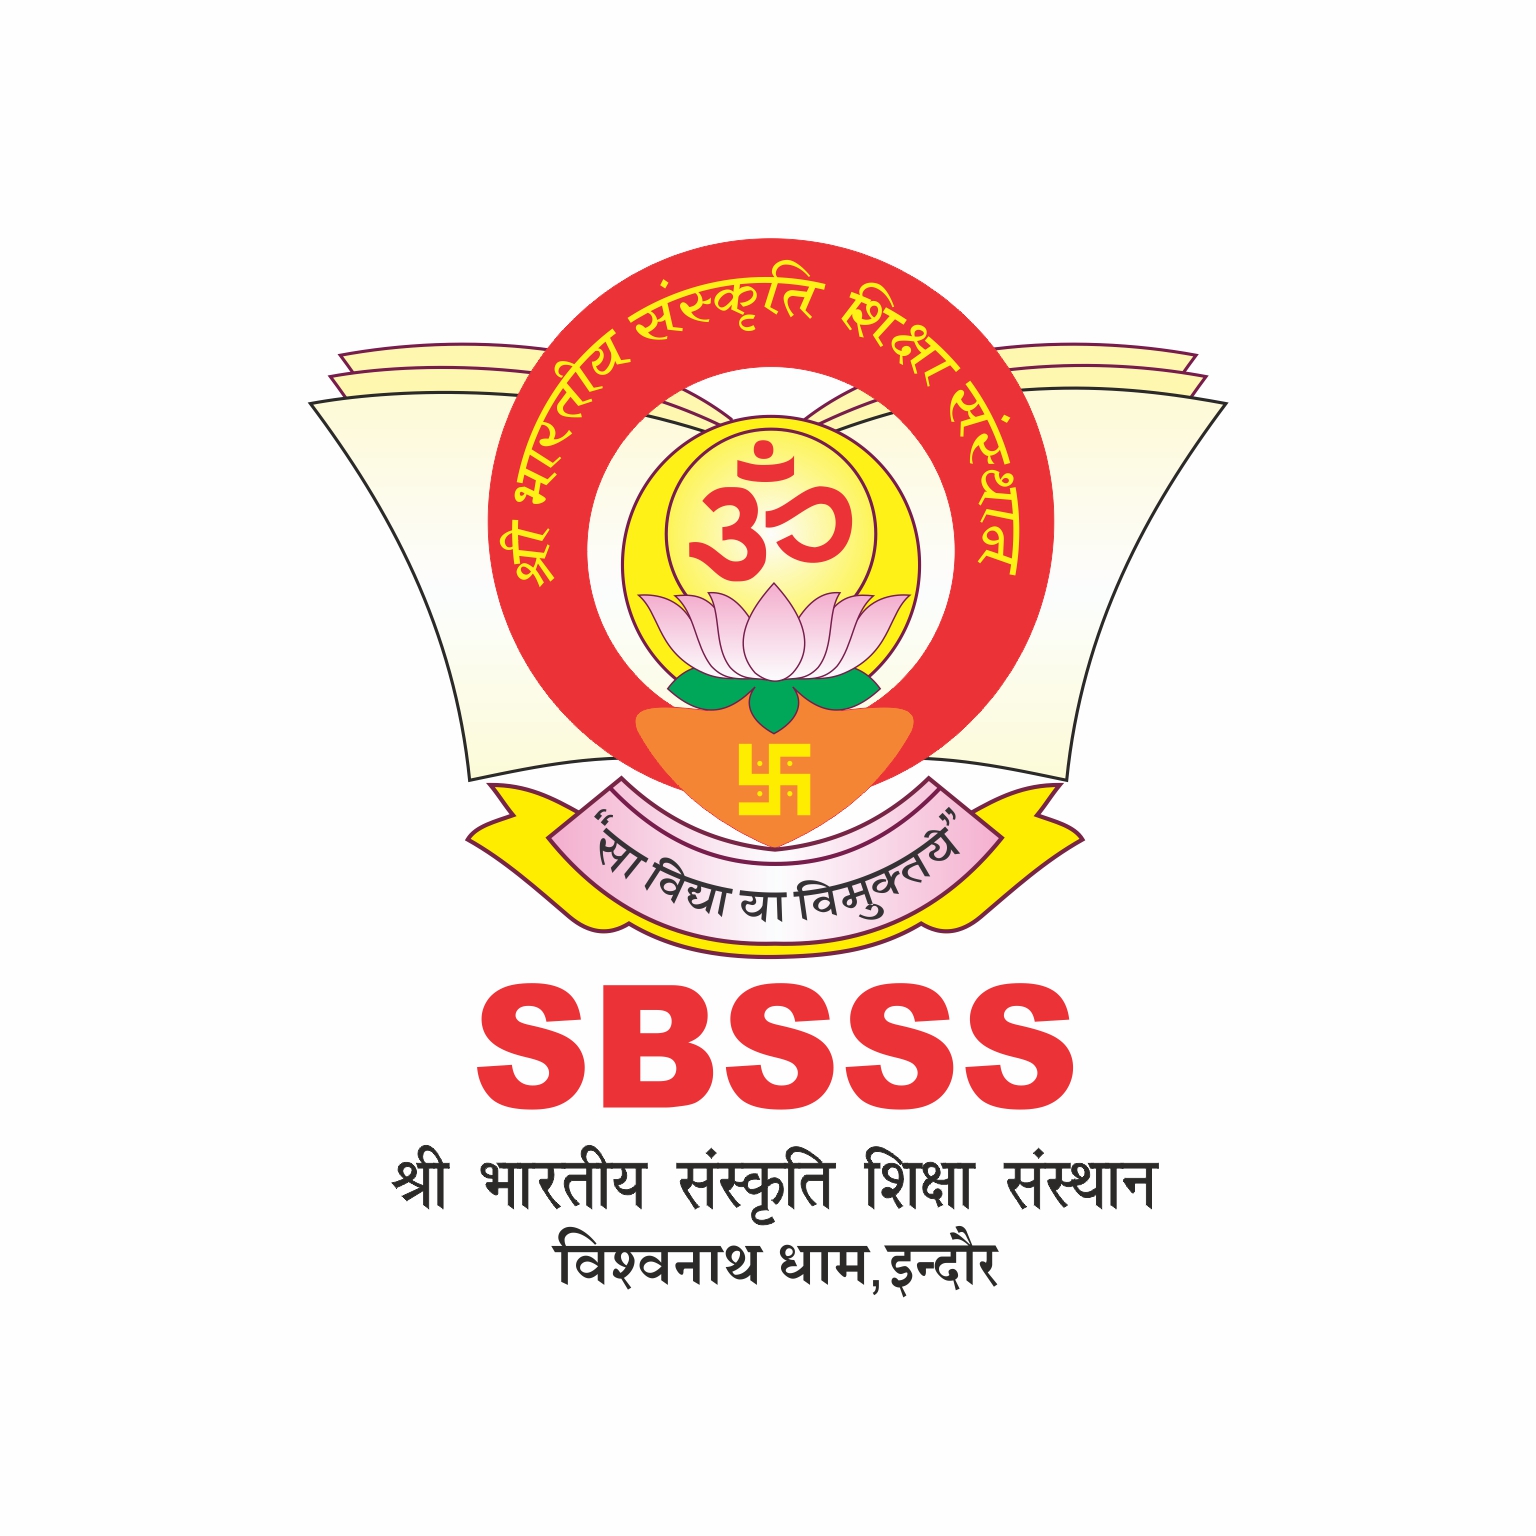 SBSSS